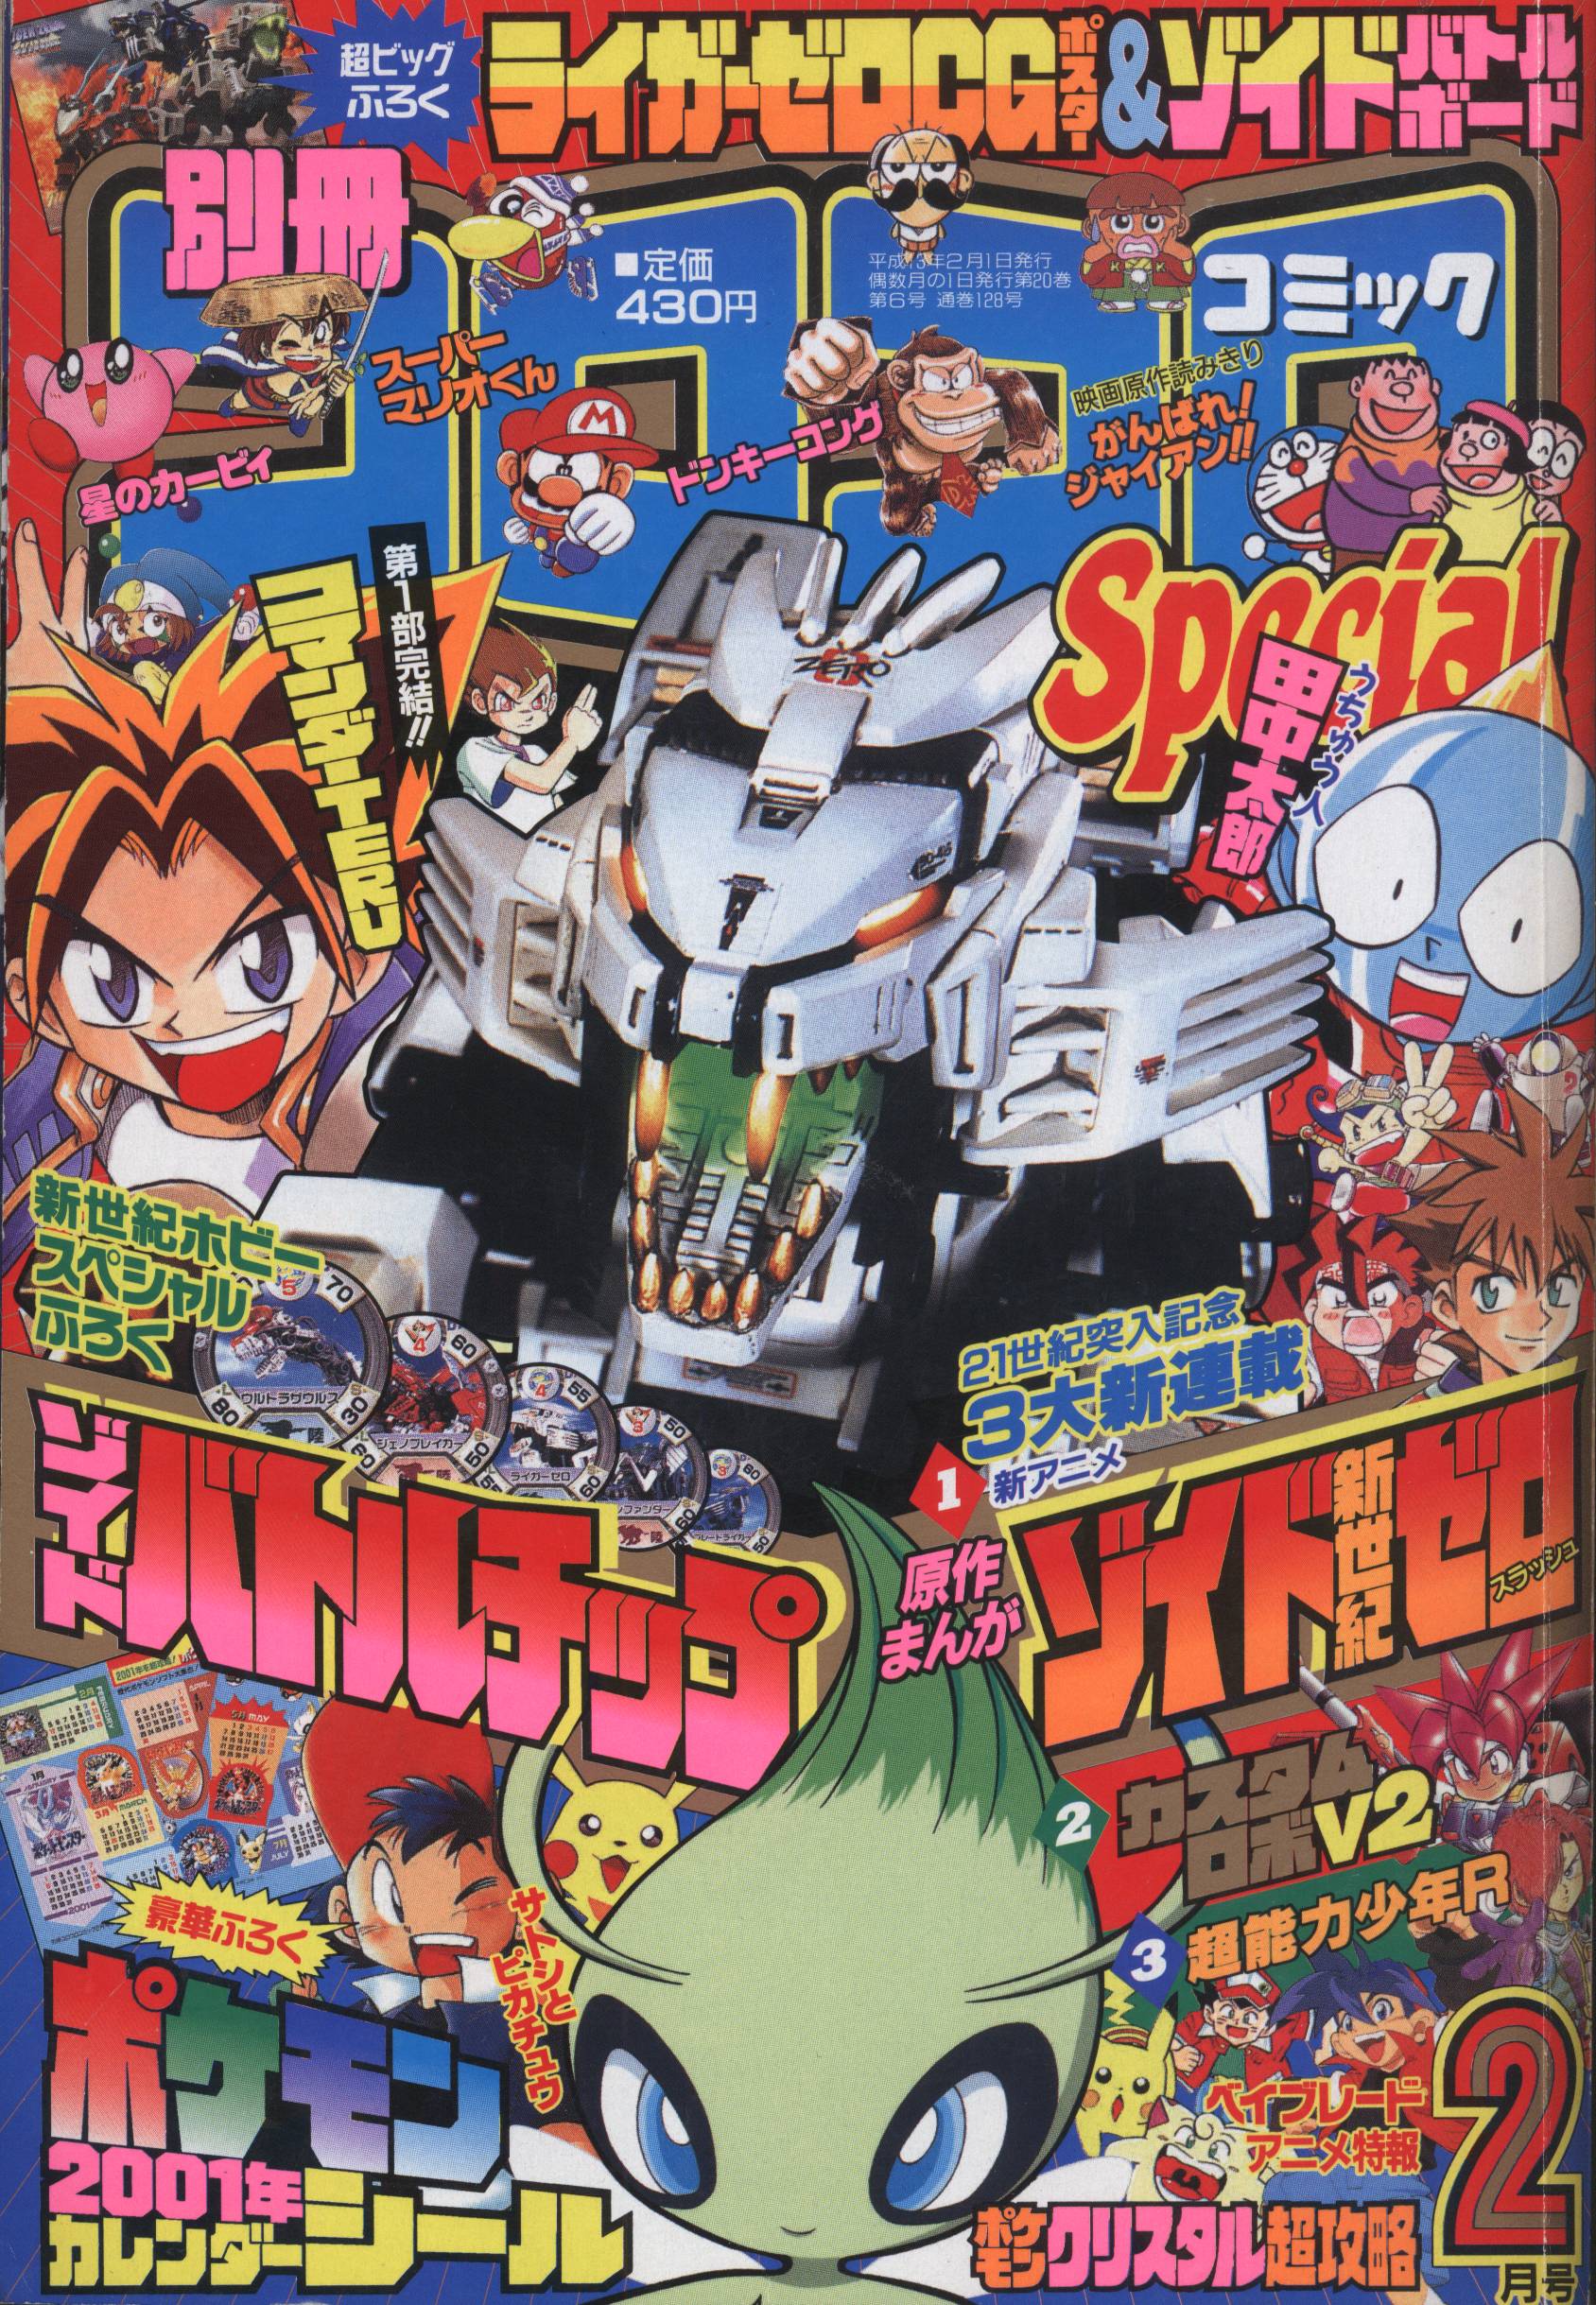 てれコロコミック 平成13年 2001年 コロコロコミック9月号増刊 